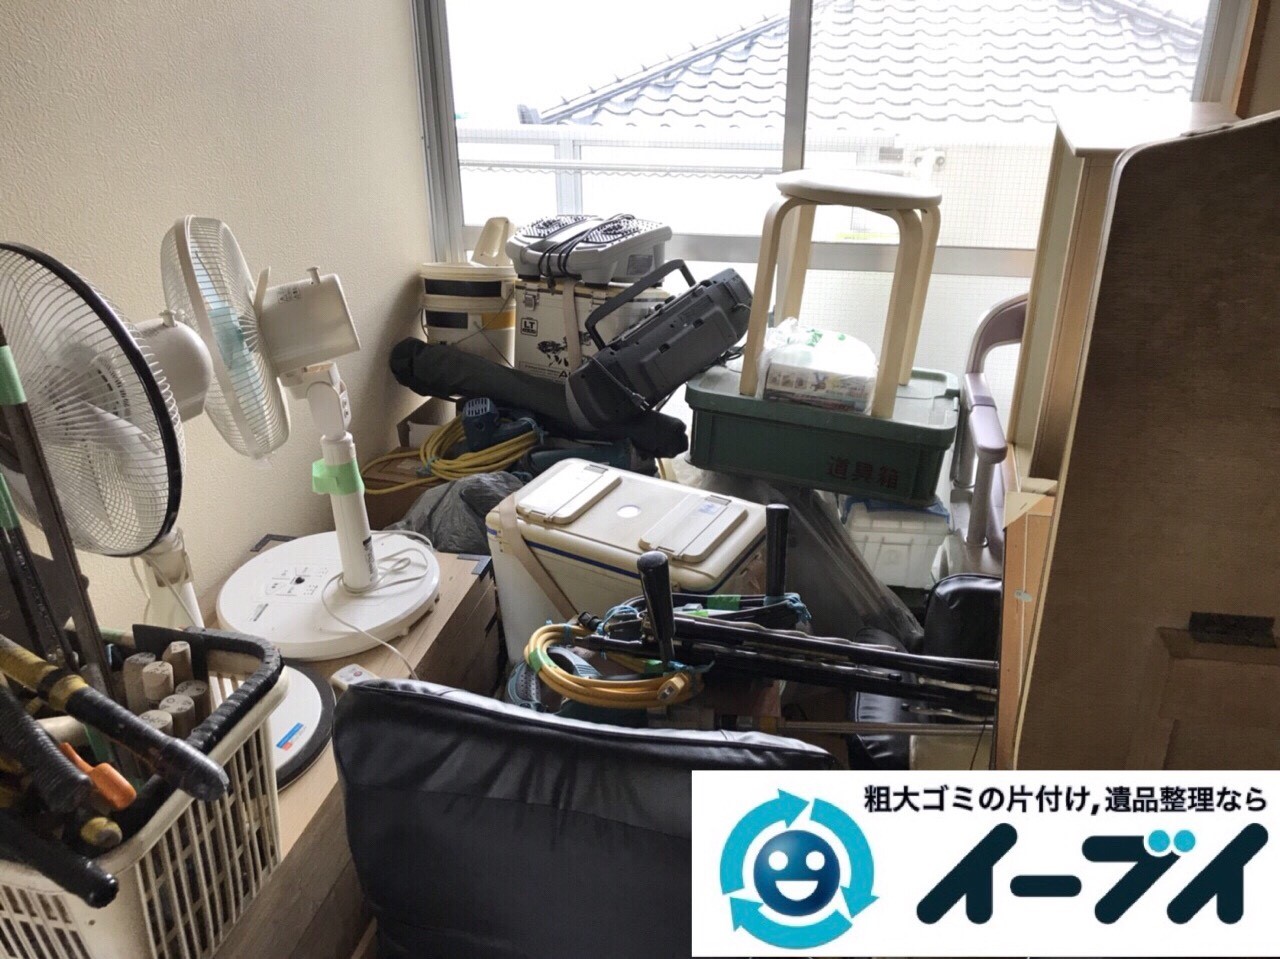 2018年3月8日大阪府堺市西区で廃家電や台所の調理器具など不用品回収をしました。写真4